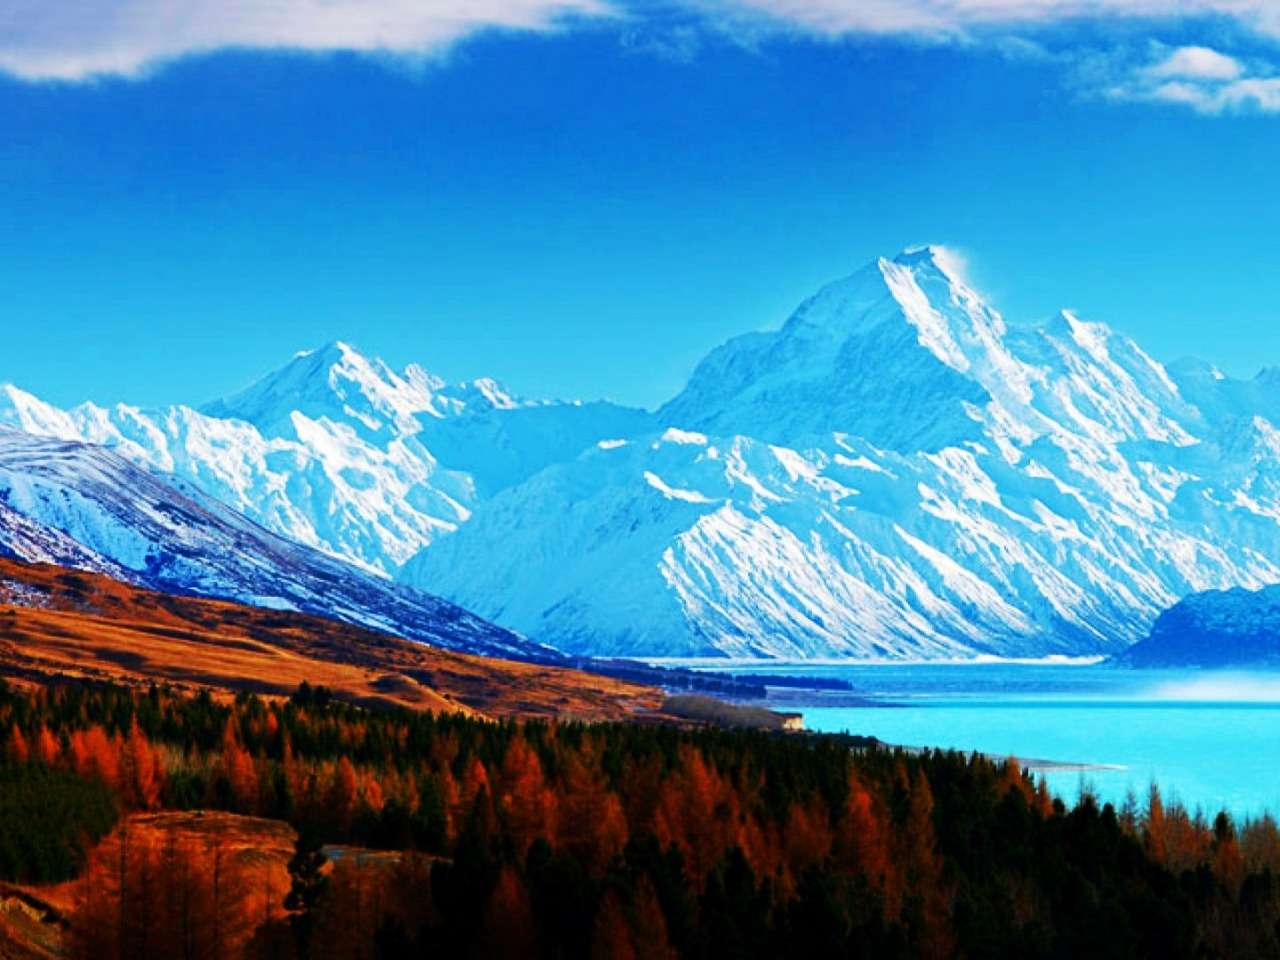 красота красных и белых гор, какое зрелище пазл онлайн